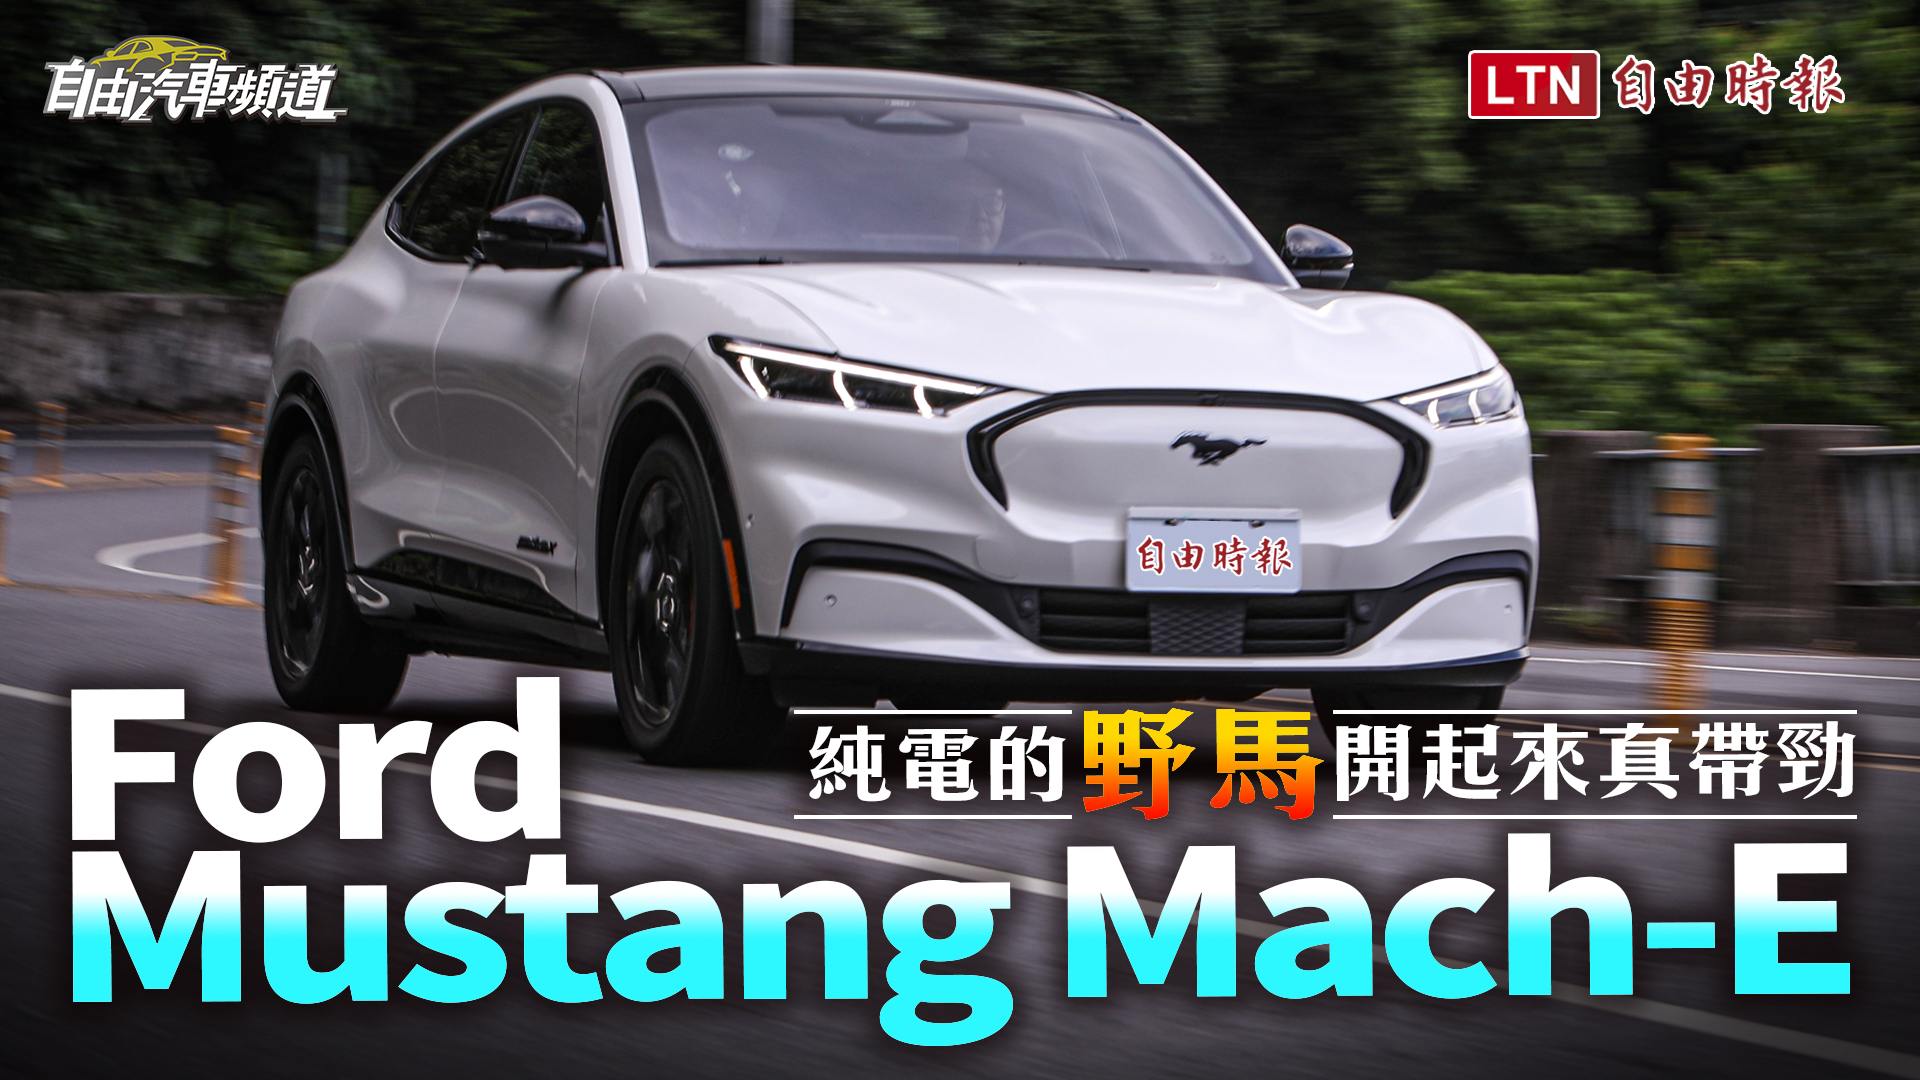 福特野馬純電休旅 Mustang Mach-E 即將抵台！三車型預售價格正式公開